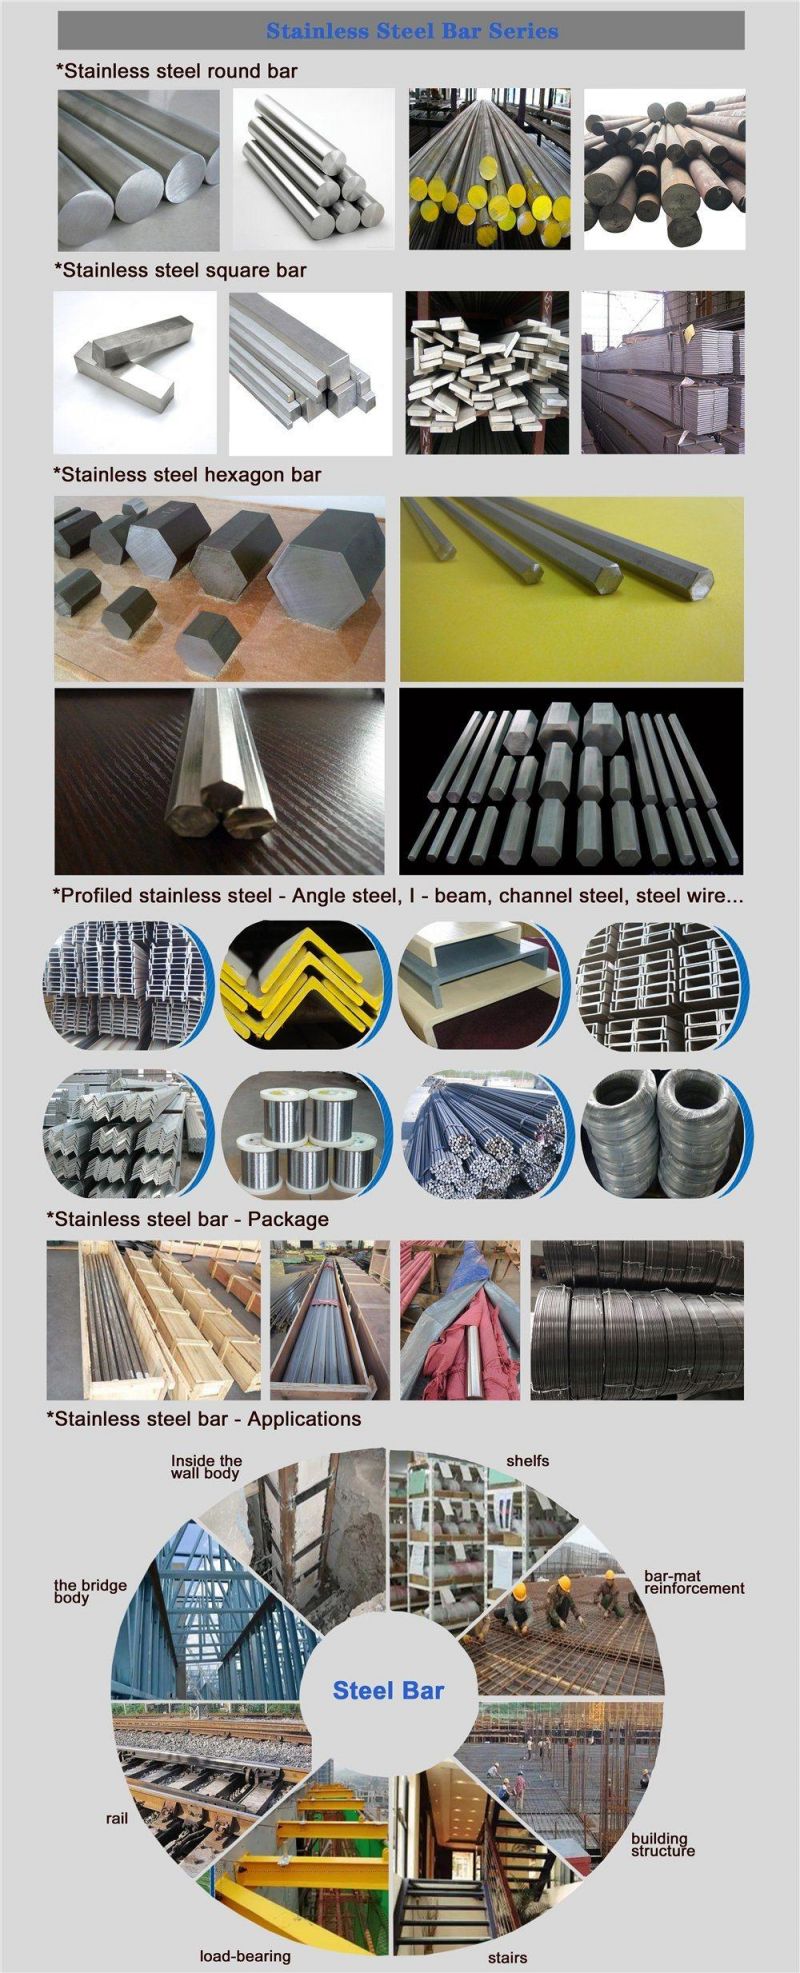 Carbon Steel Inox Stainless Steel Ss400 Q235 1045 Hexagonal Steel Bar / Hexagonal Bar